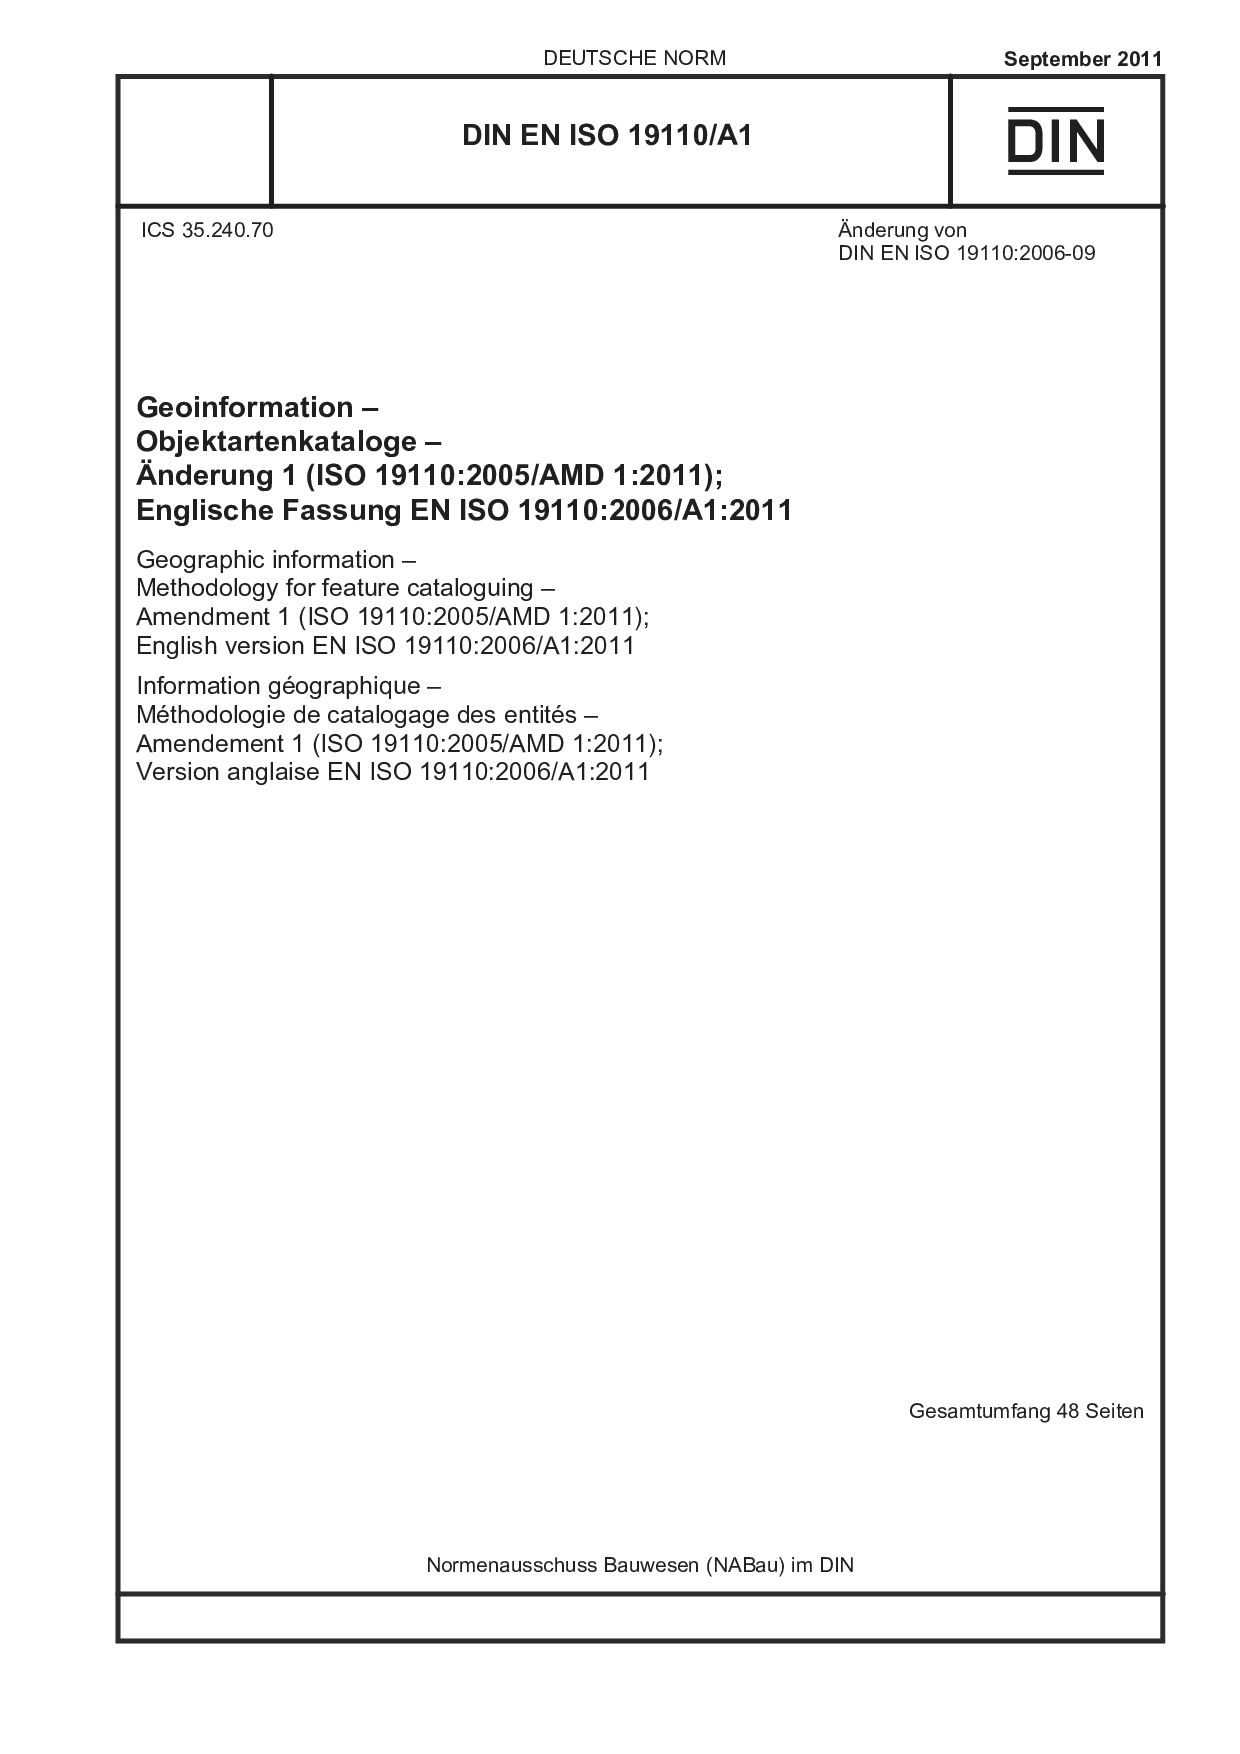 DIN EN ISO 19110/A1:2011封面图